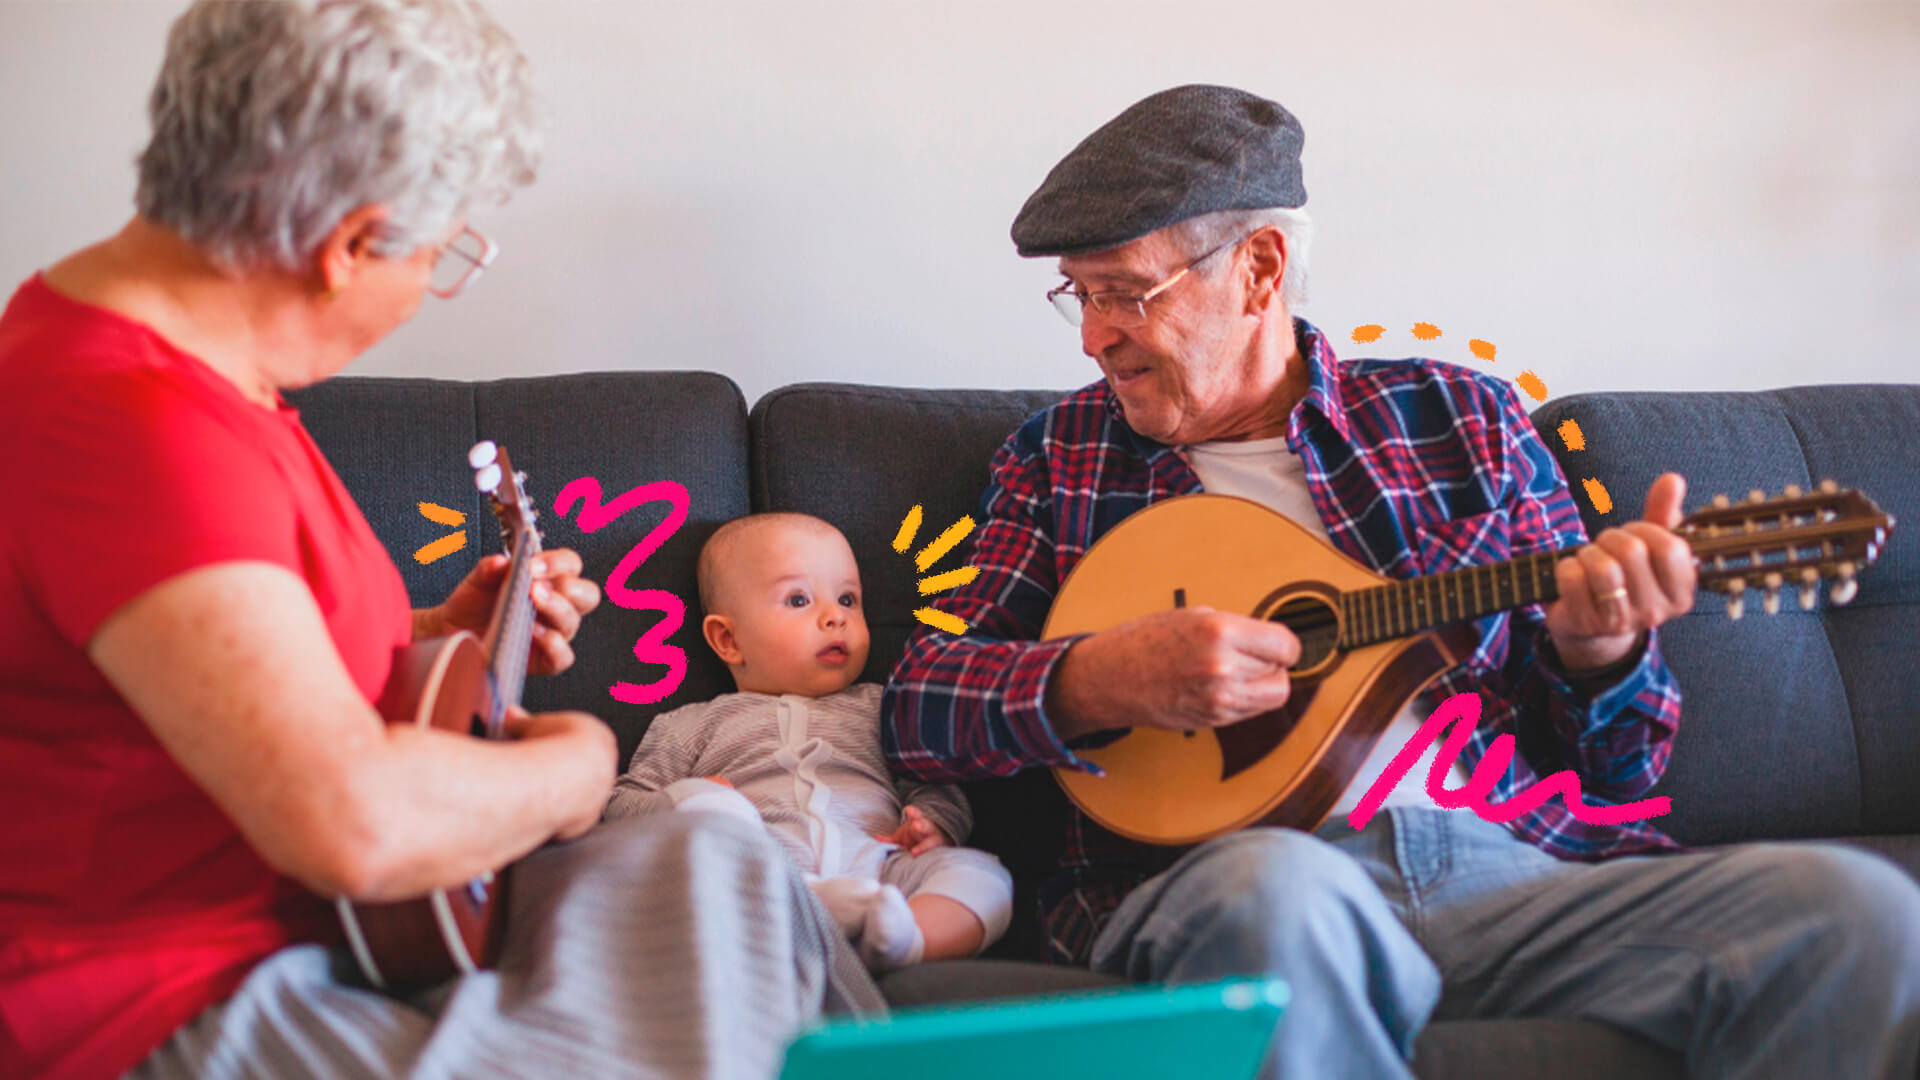 Na imagem, um homem idoso e um bebê, avô e neto, estão sentados um ao lado do outro em um sofá. O avô toca um instrumento de cordas e sorri para o neto. Ambos possuem pele branca.